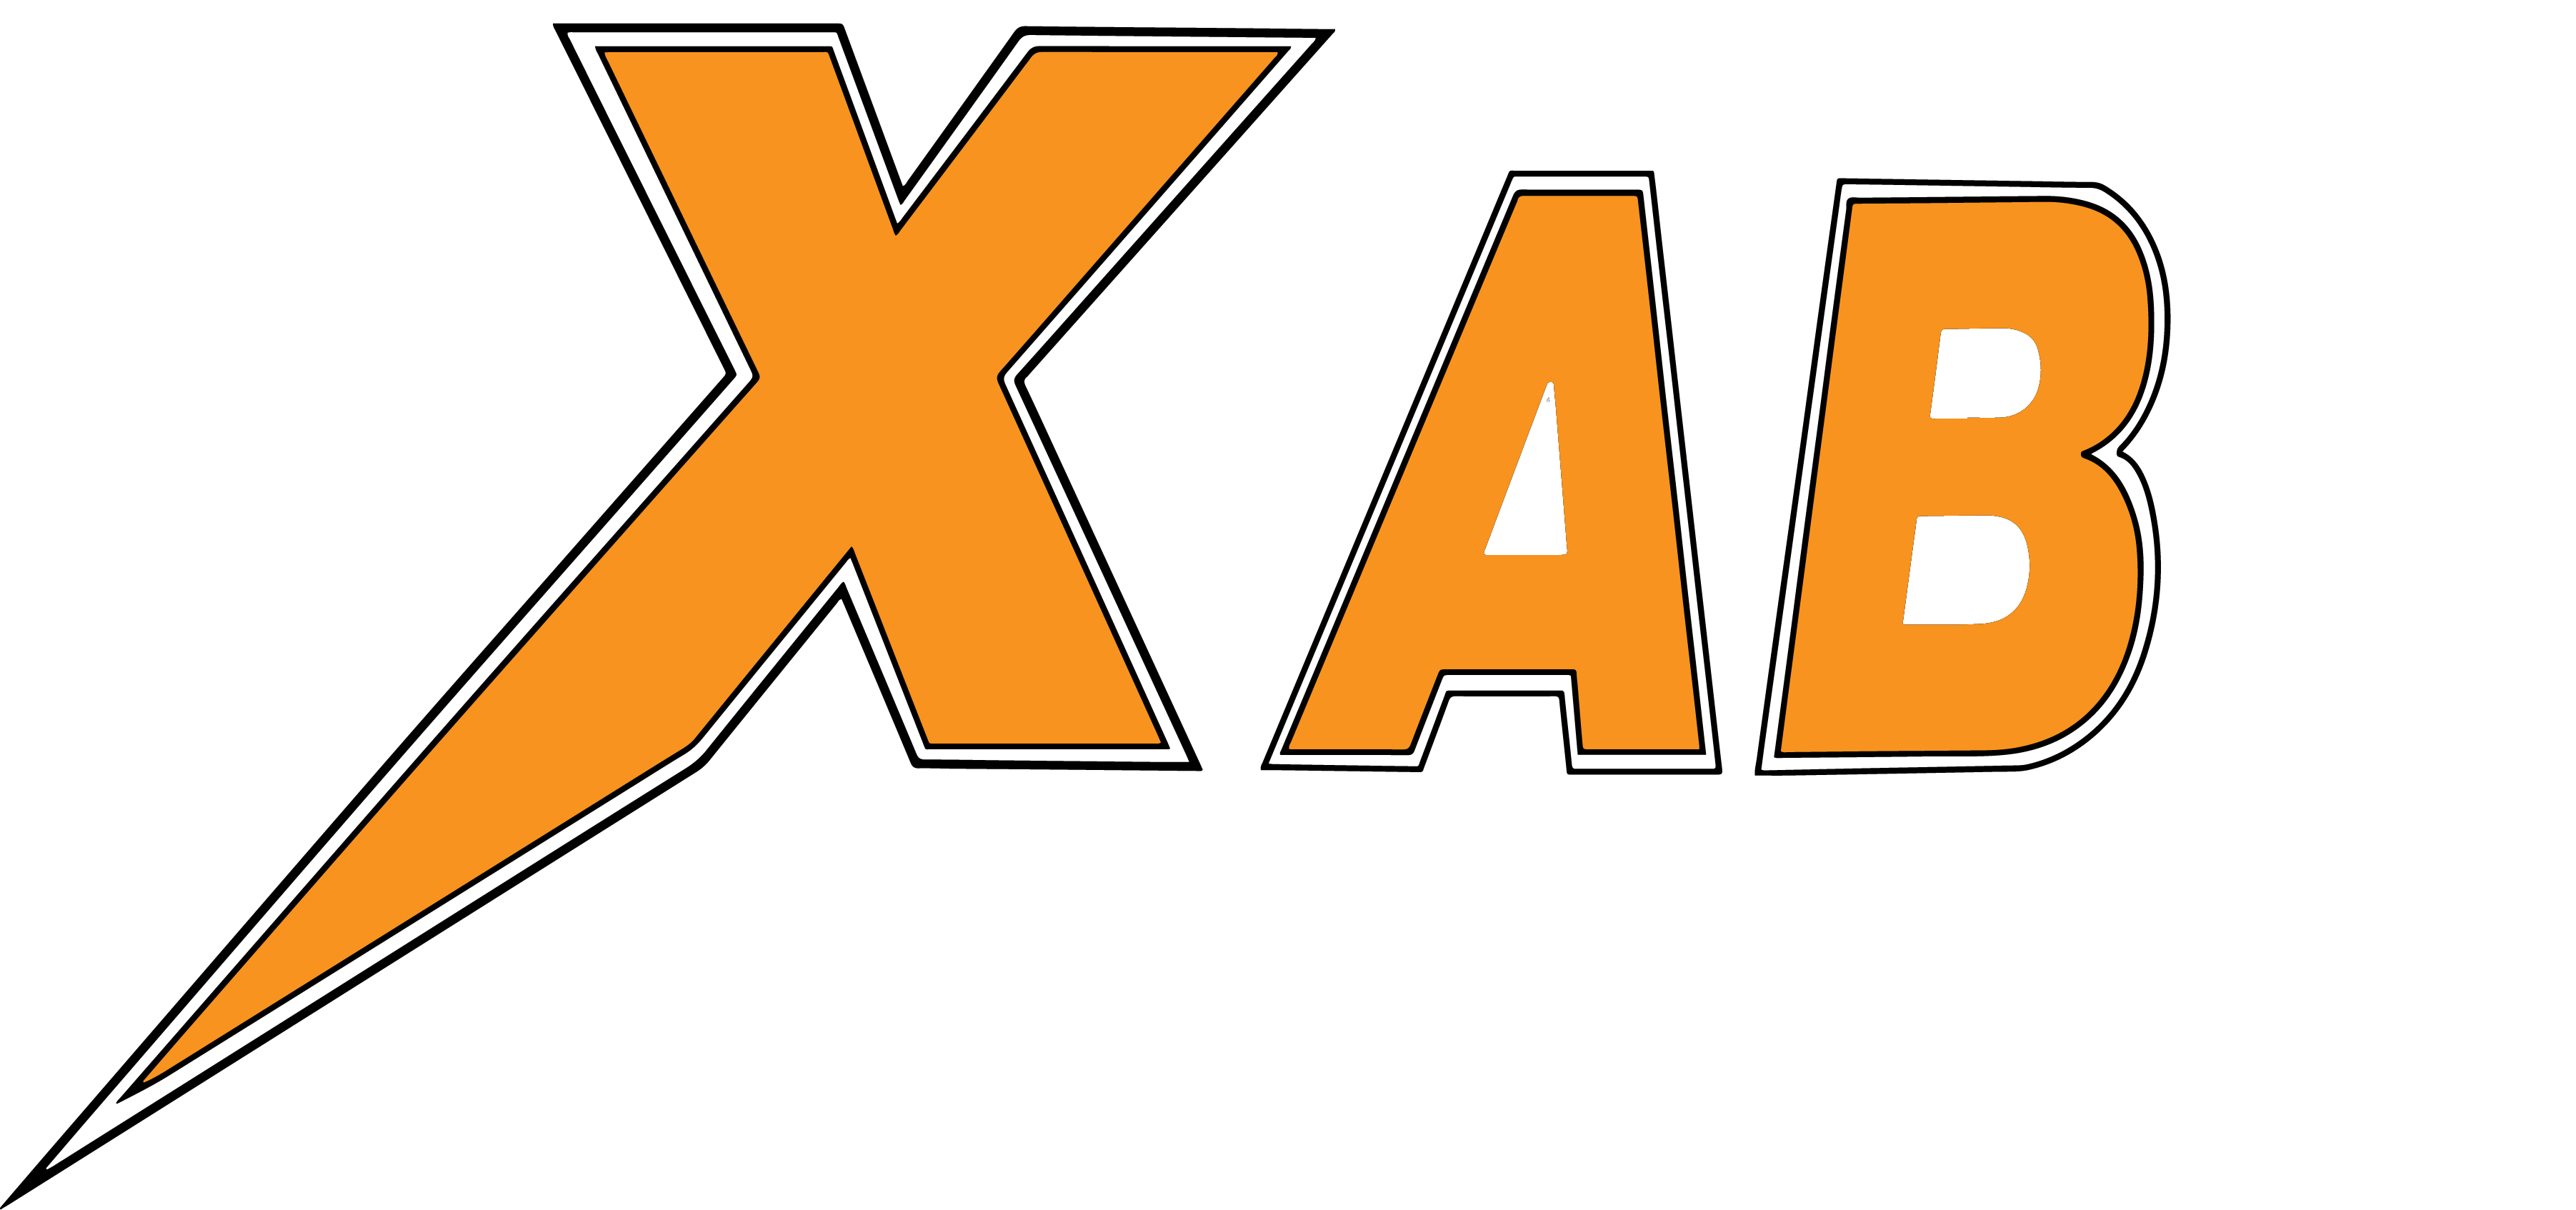 X i Sverige AB